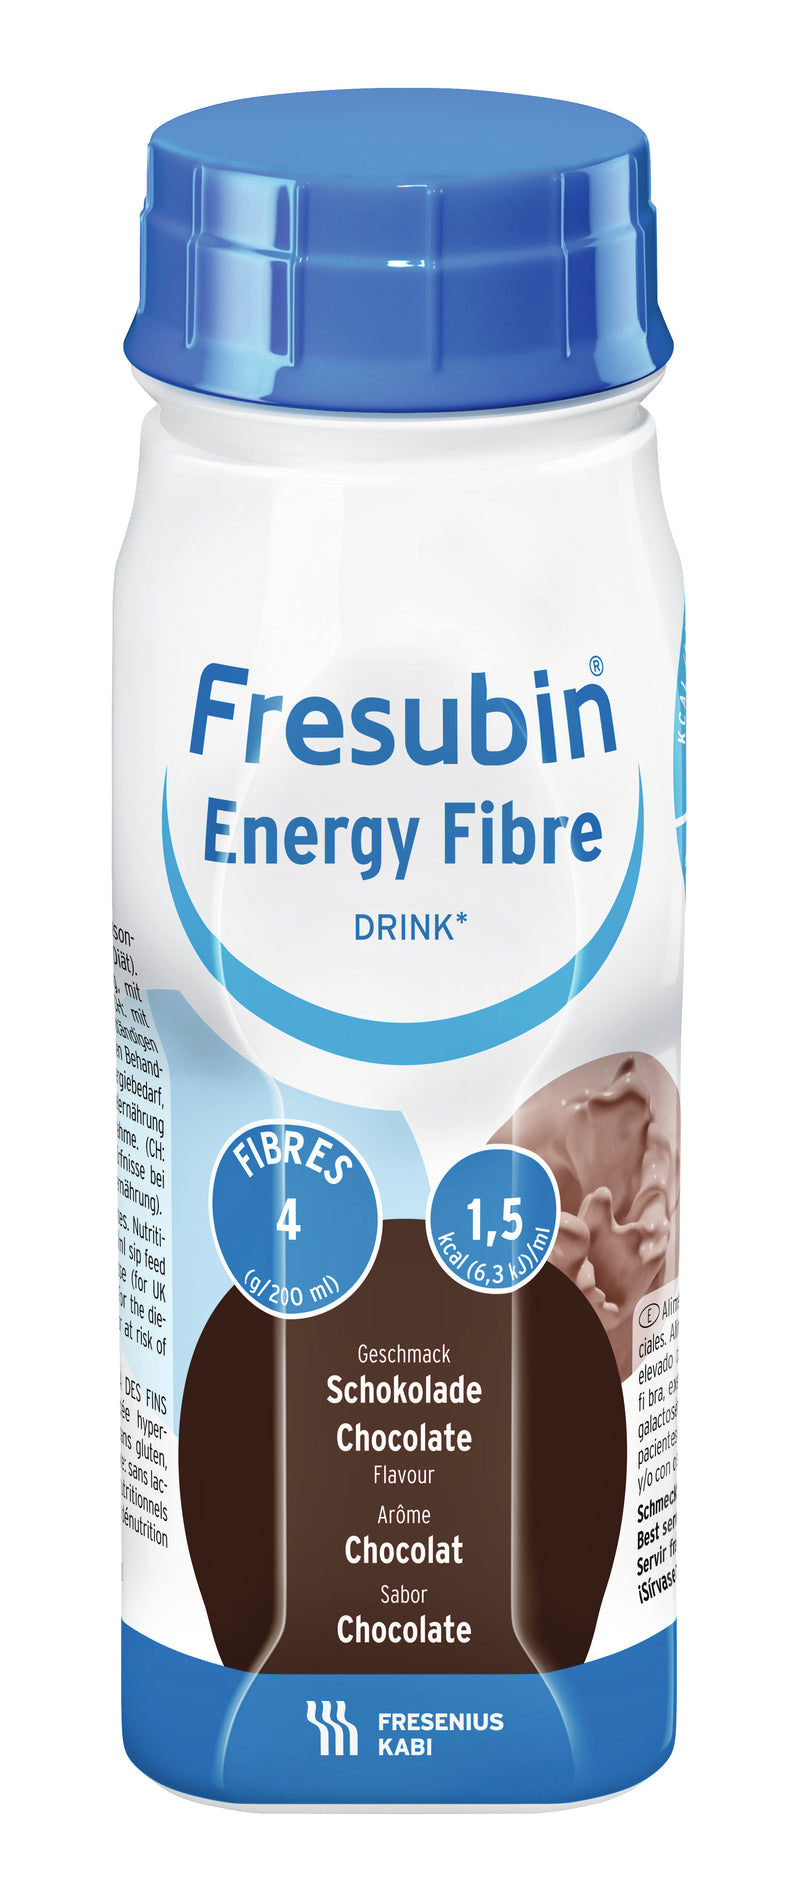 Fresubin Energy Fibre Drink 200mL | Pack of 4